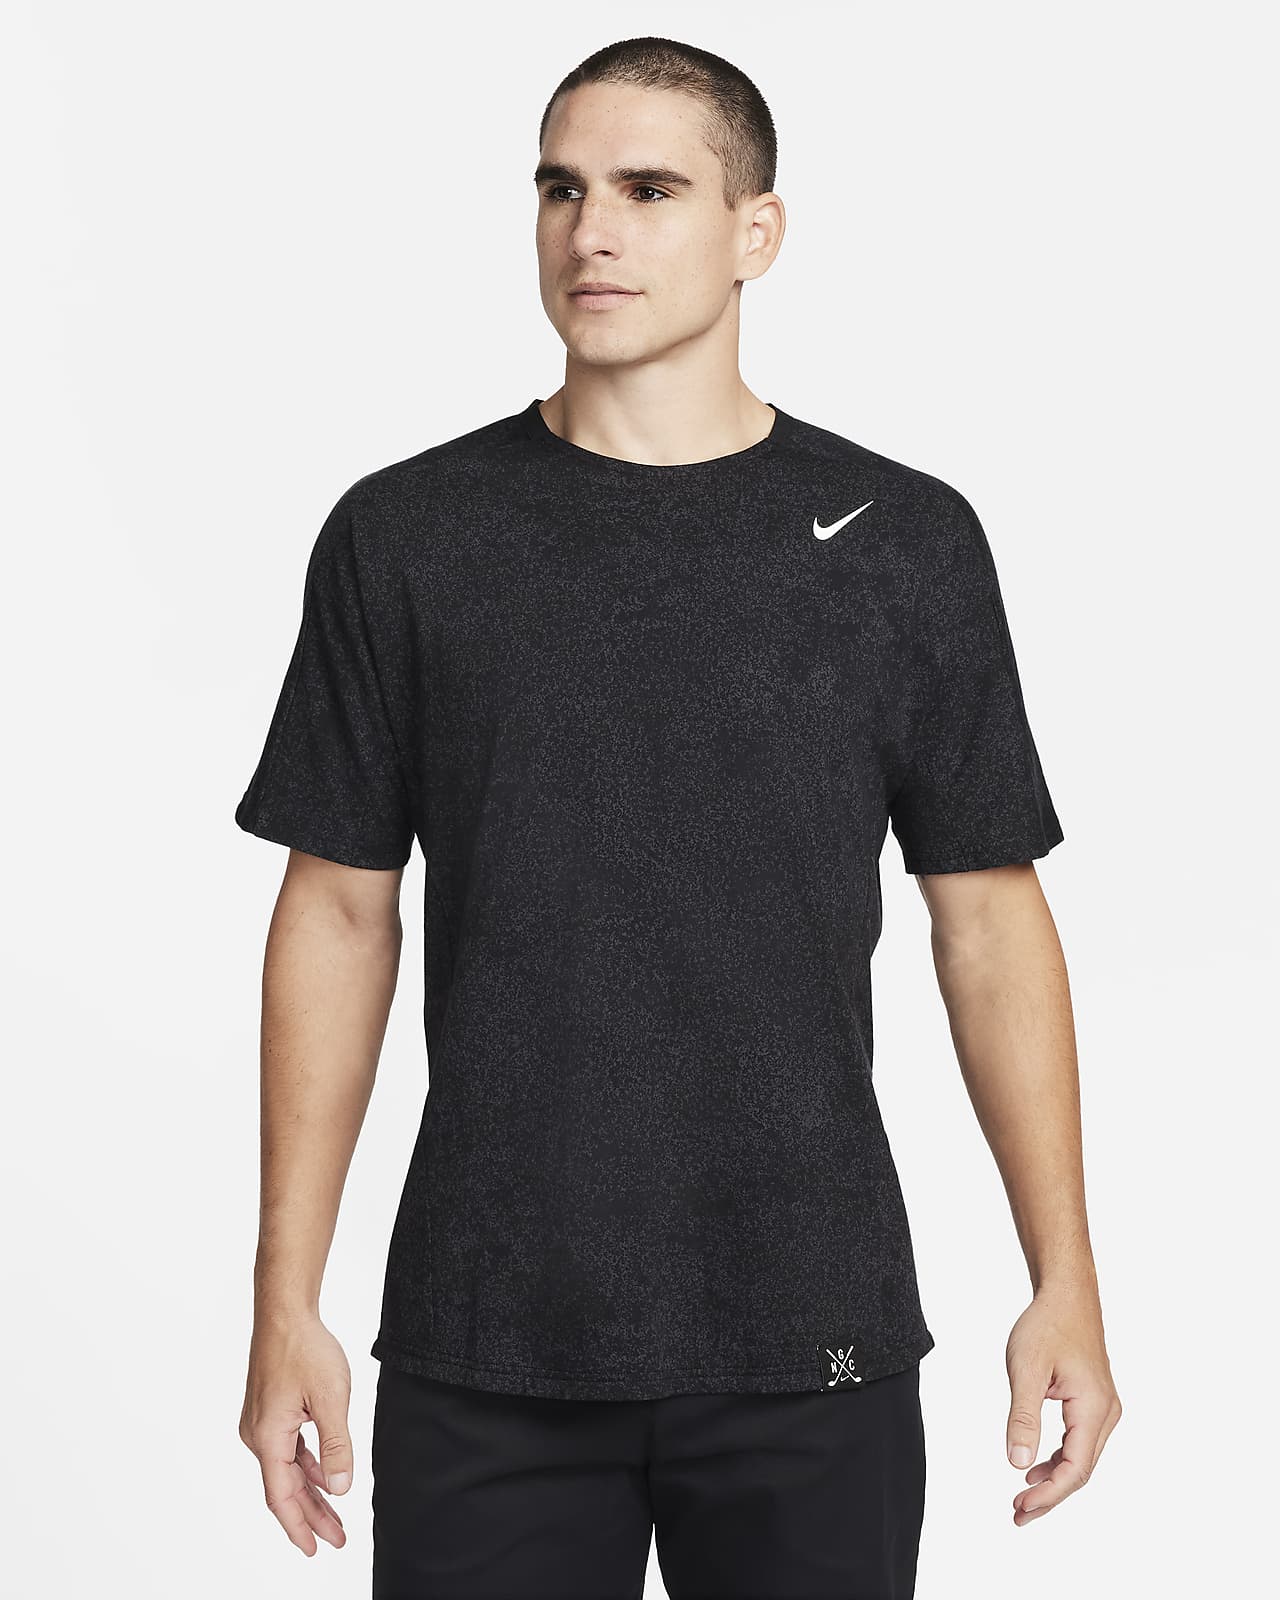 Pánské golfové tričko Nike Golf Club s krátkým rukávem